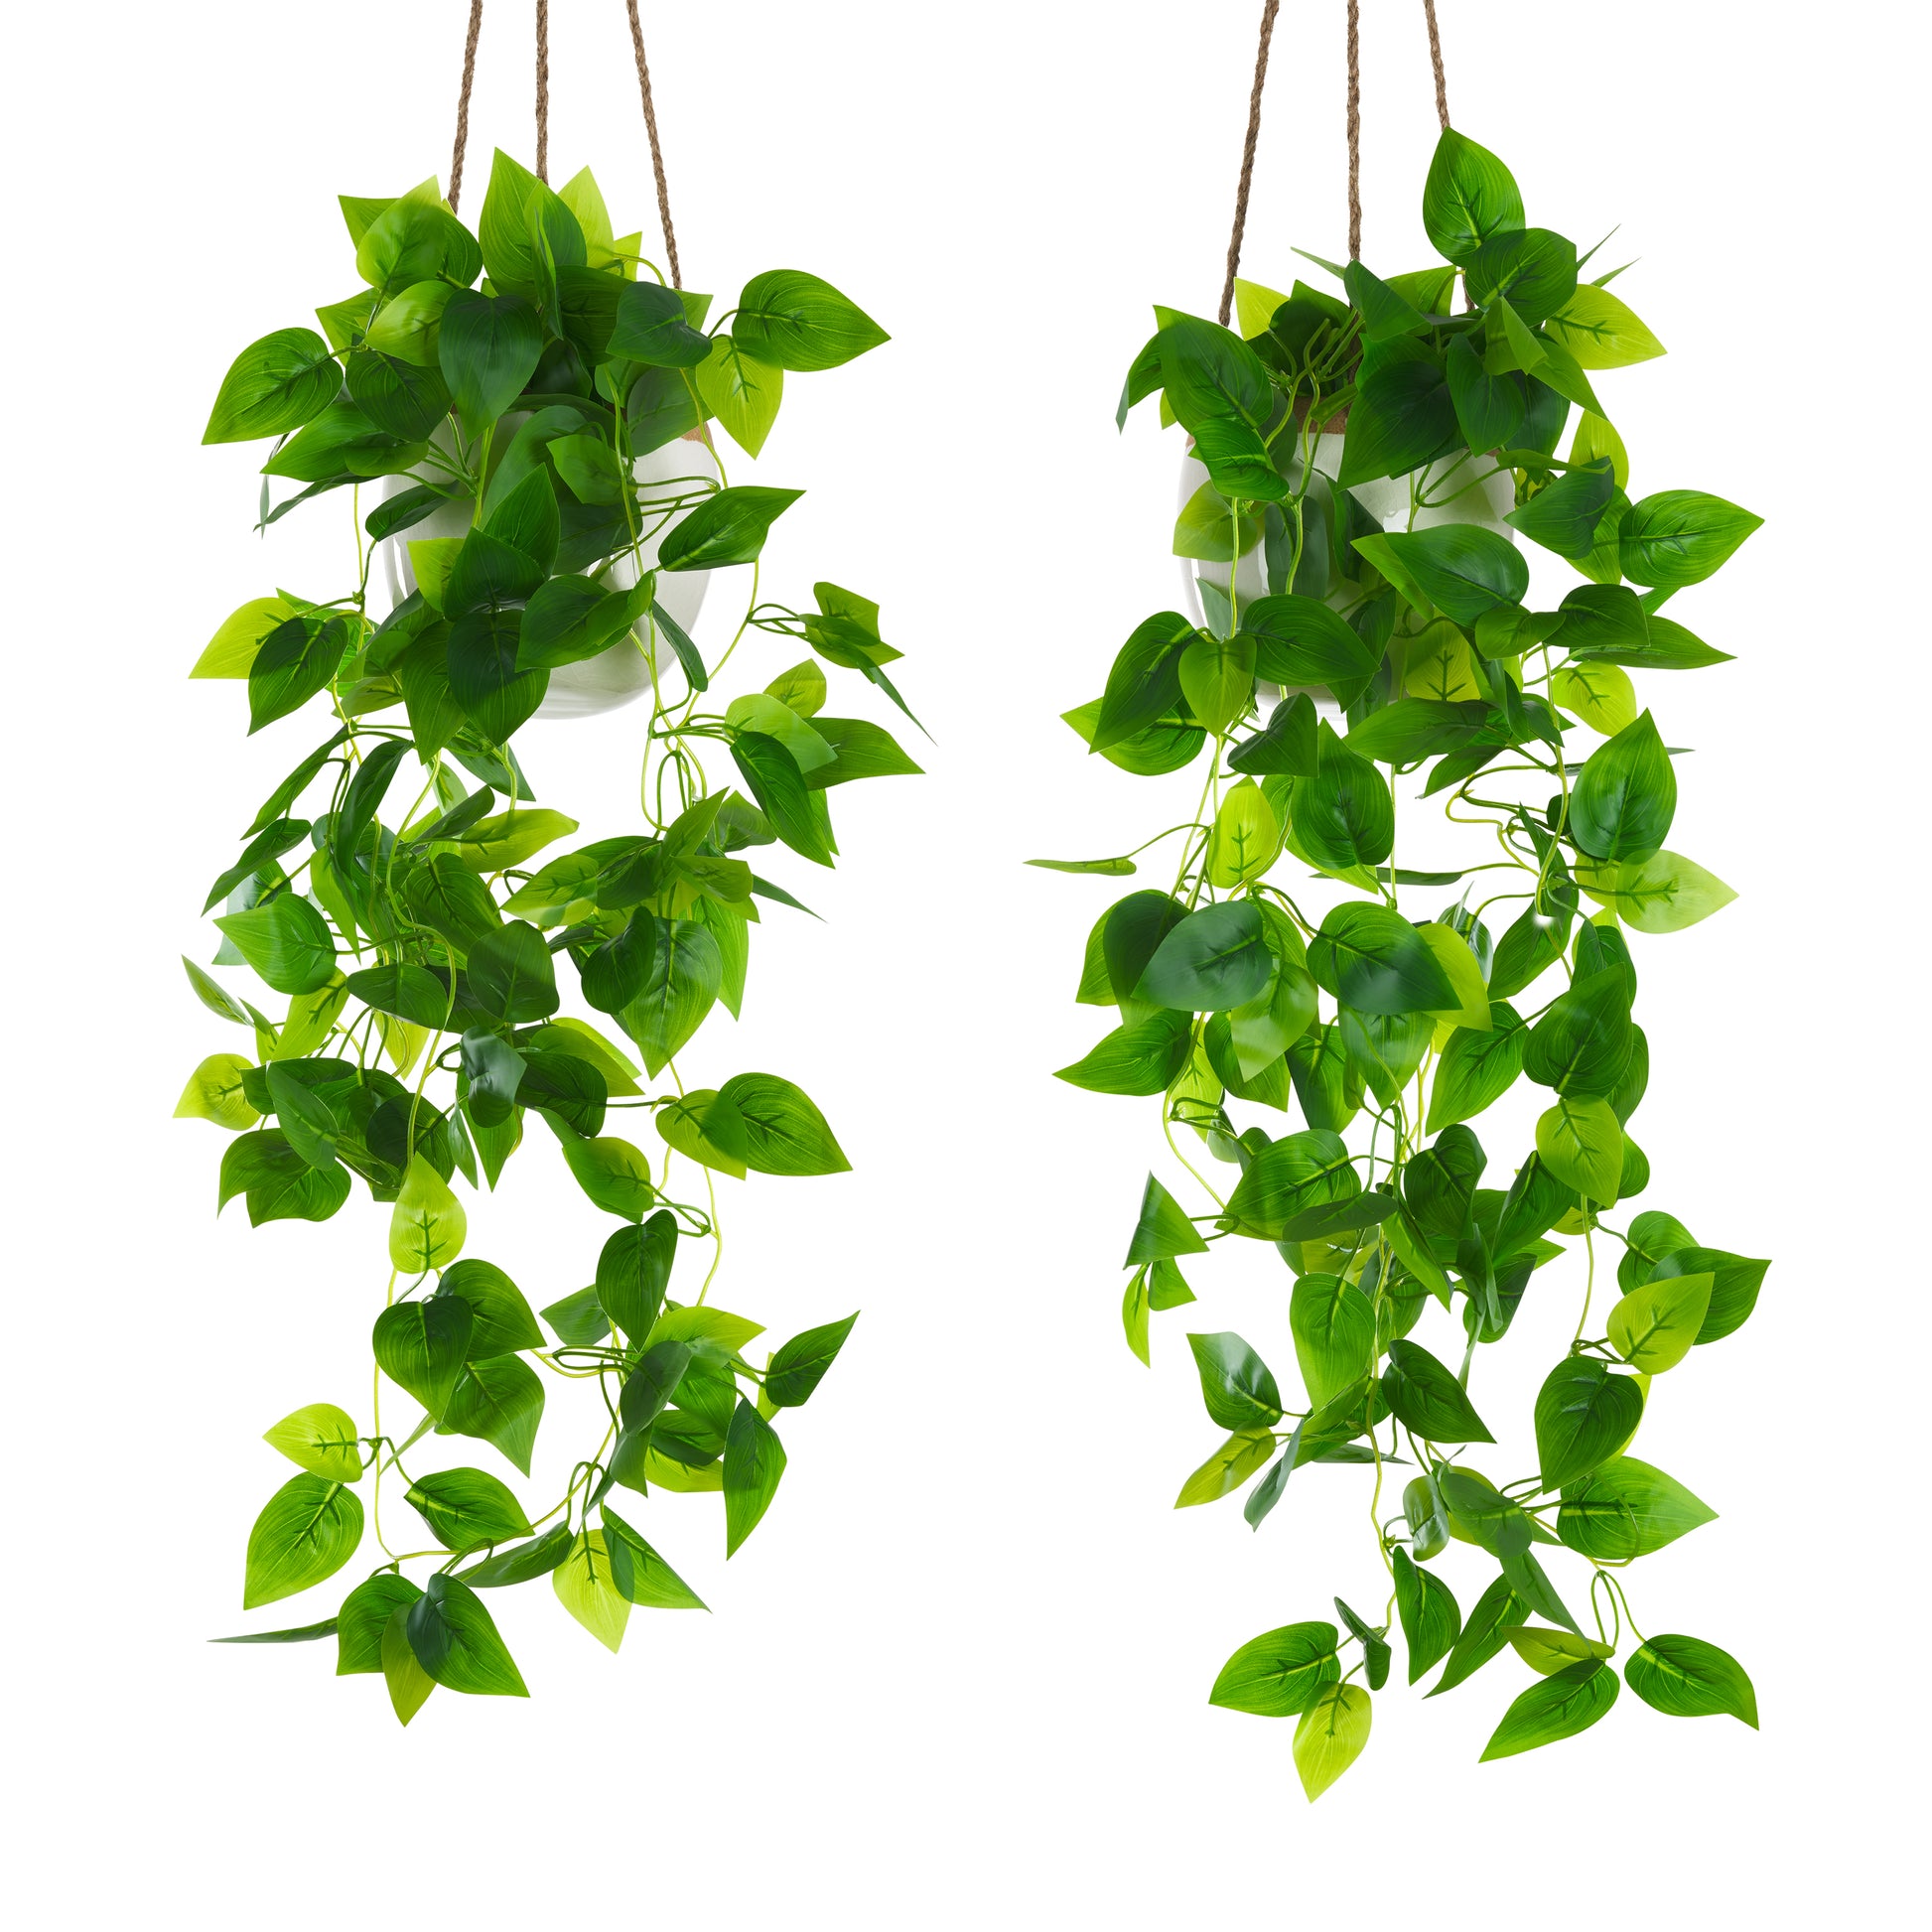 Zwei hängende grüne Kunstpflanzen in Töpfen vor weißem Hintergrund.